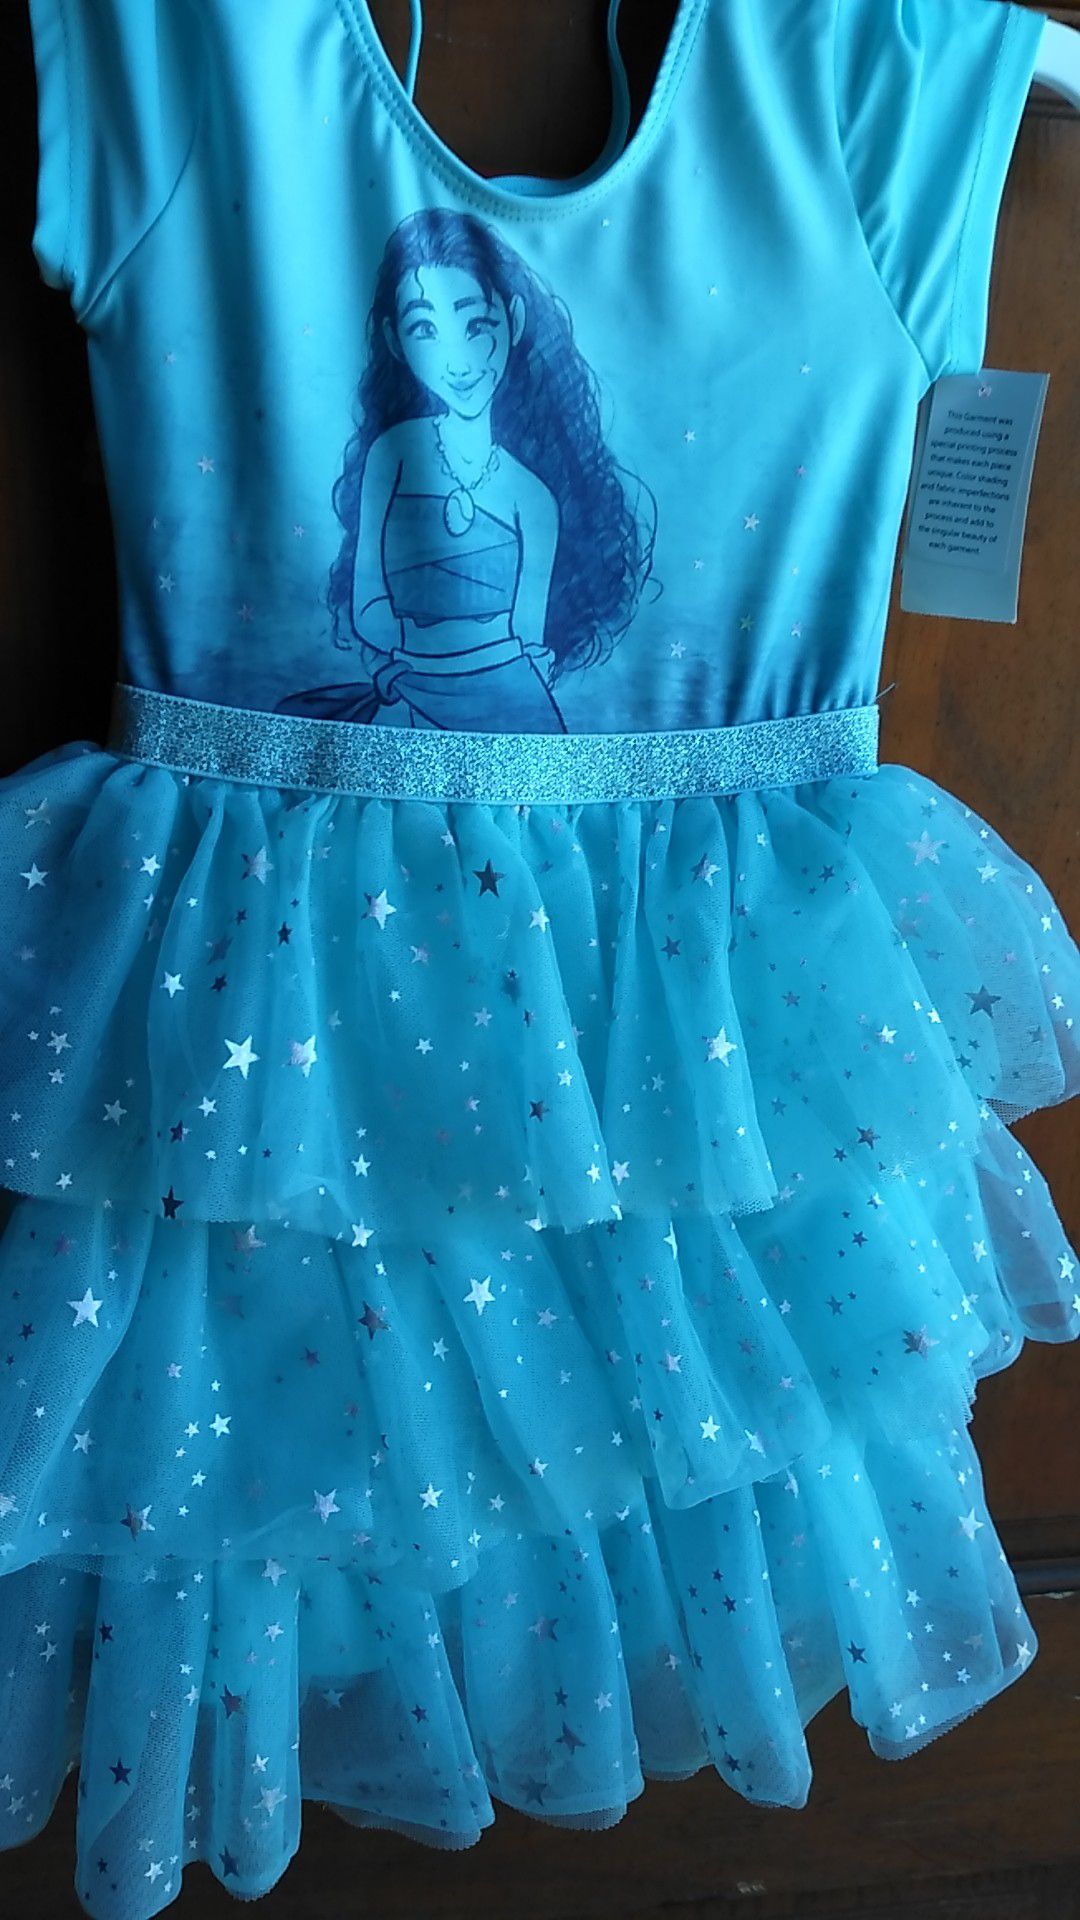 New dress from Disney, Moana size 4t